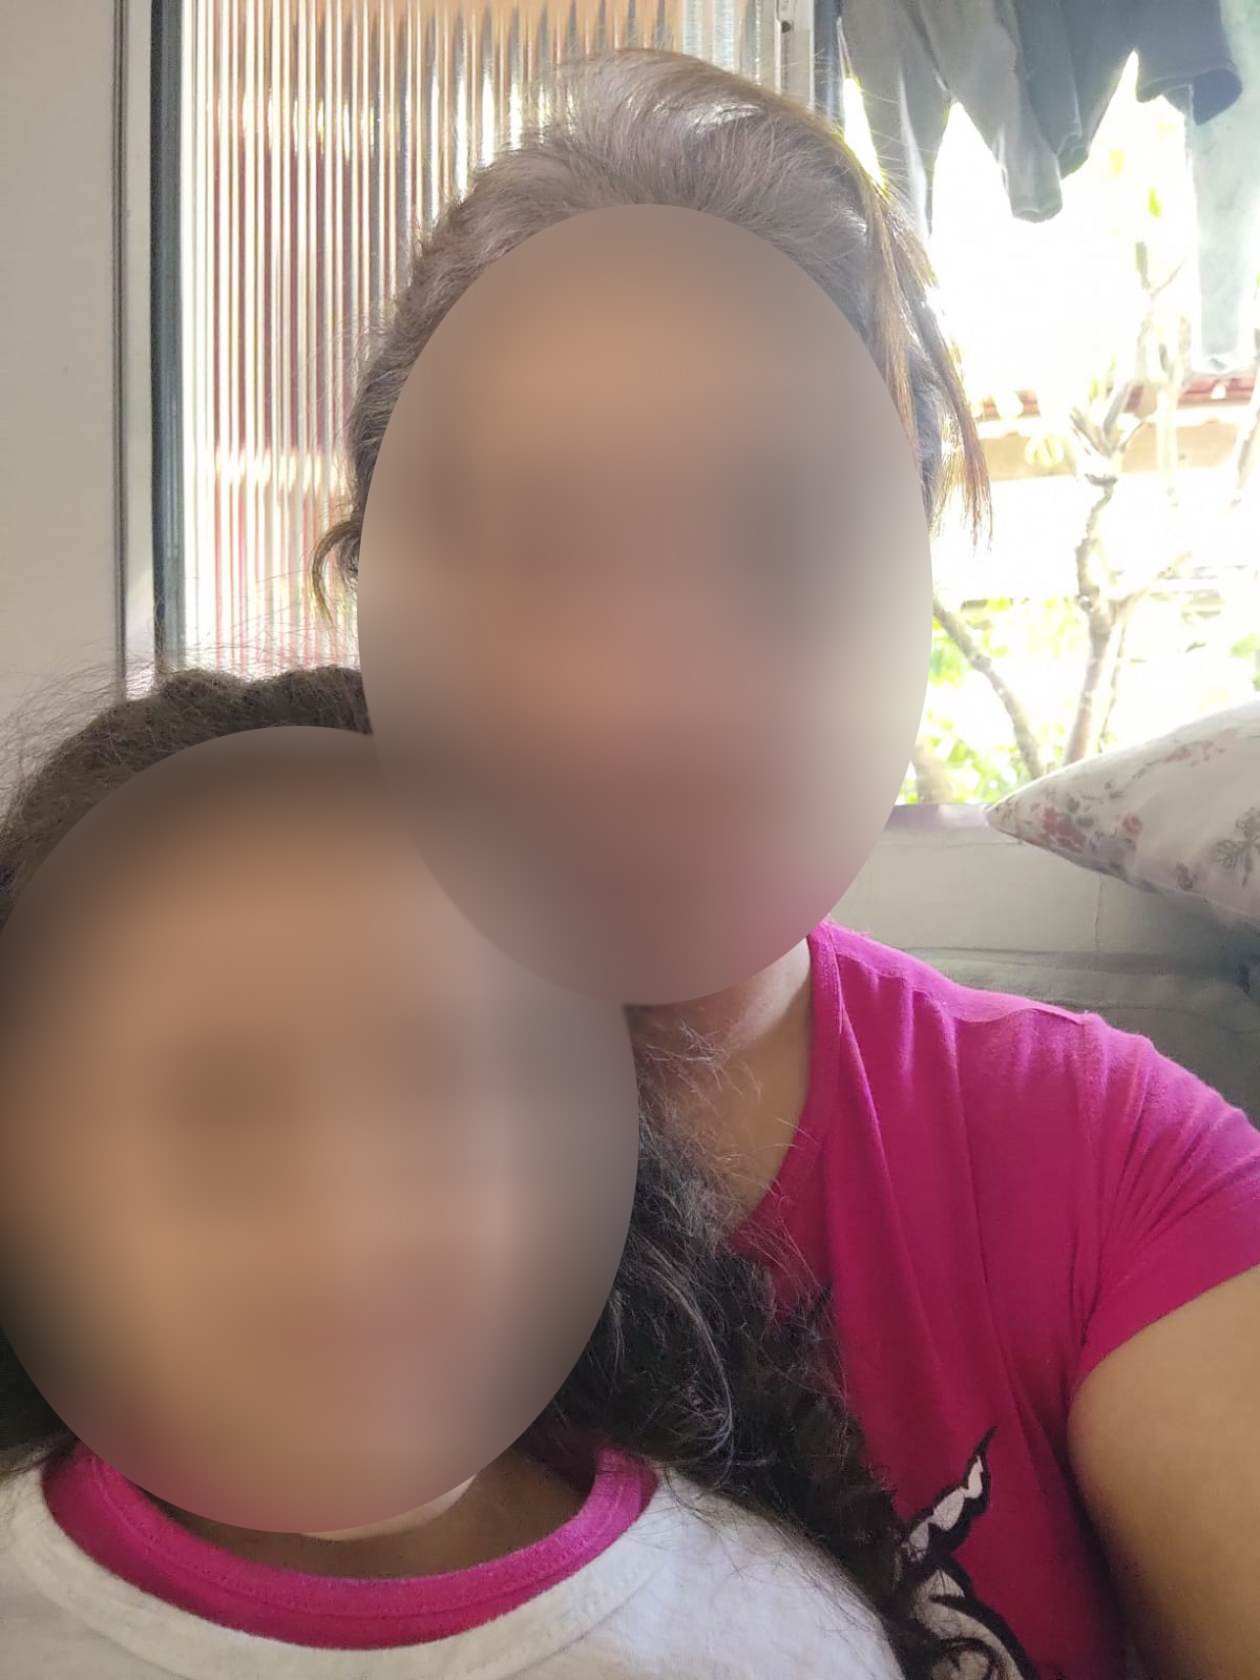 Mulher denuncia marido de amiga por estuprar a filha de 4 anos: 'mãe, ele lambeu meu peito', contou a menina